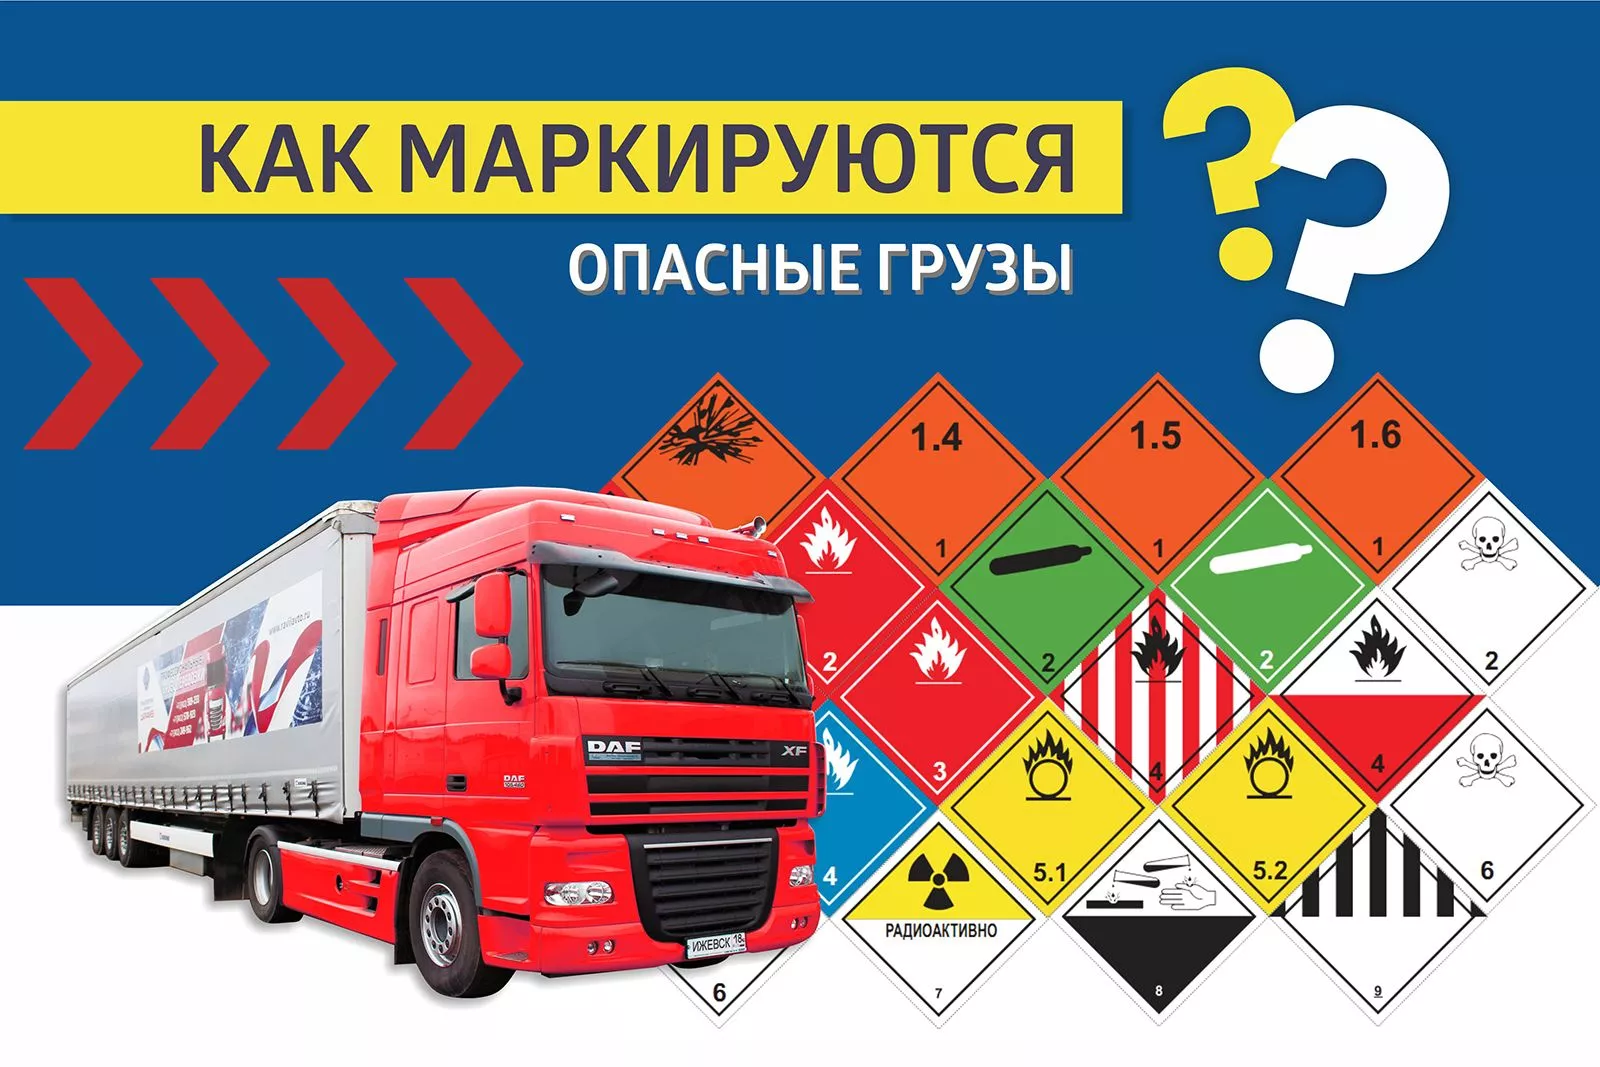 Особенности маркировки опасных грузов при транспортировке